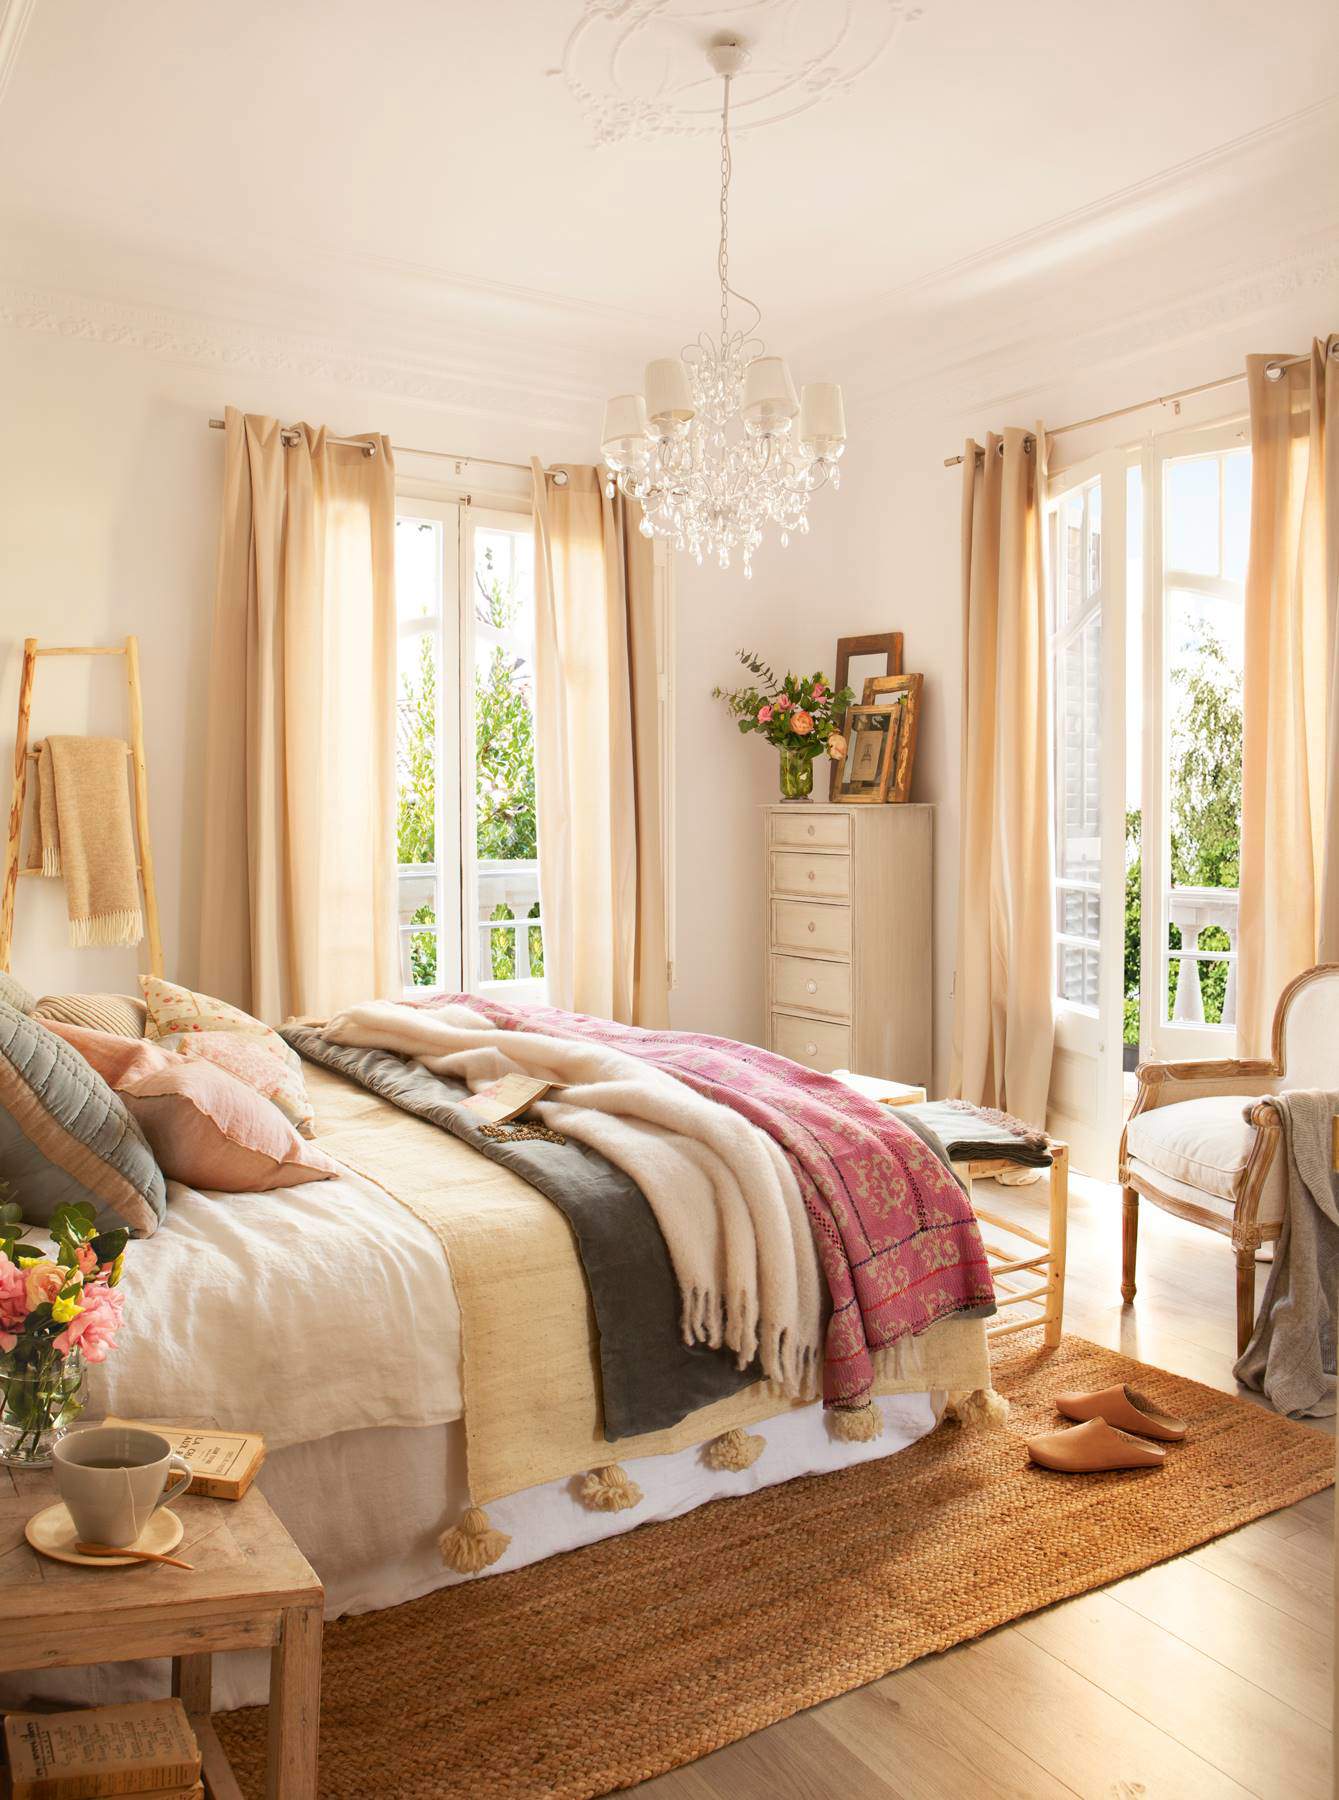 Dormitorio de base neutra y cama vestida con textiles superpuestos de distintos colores